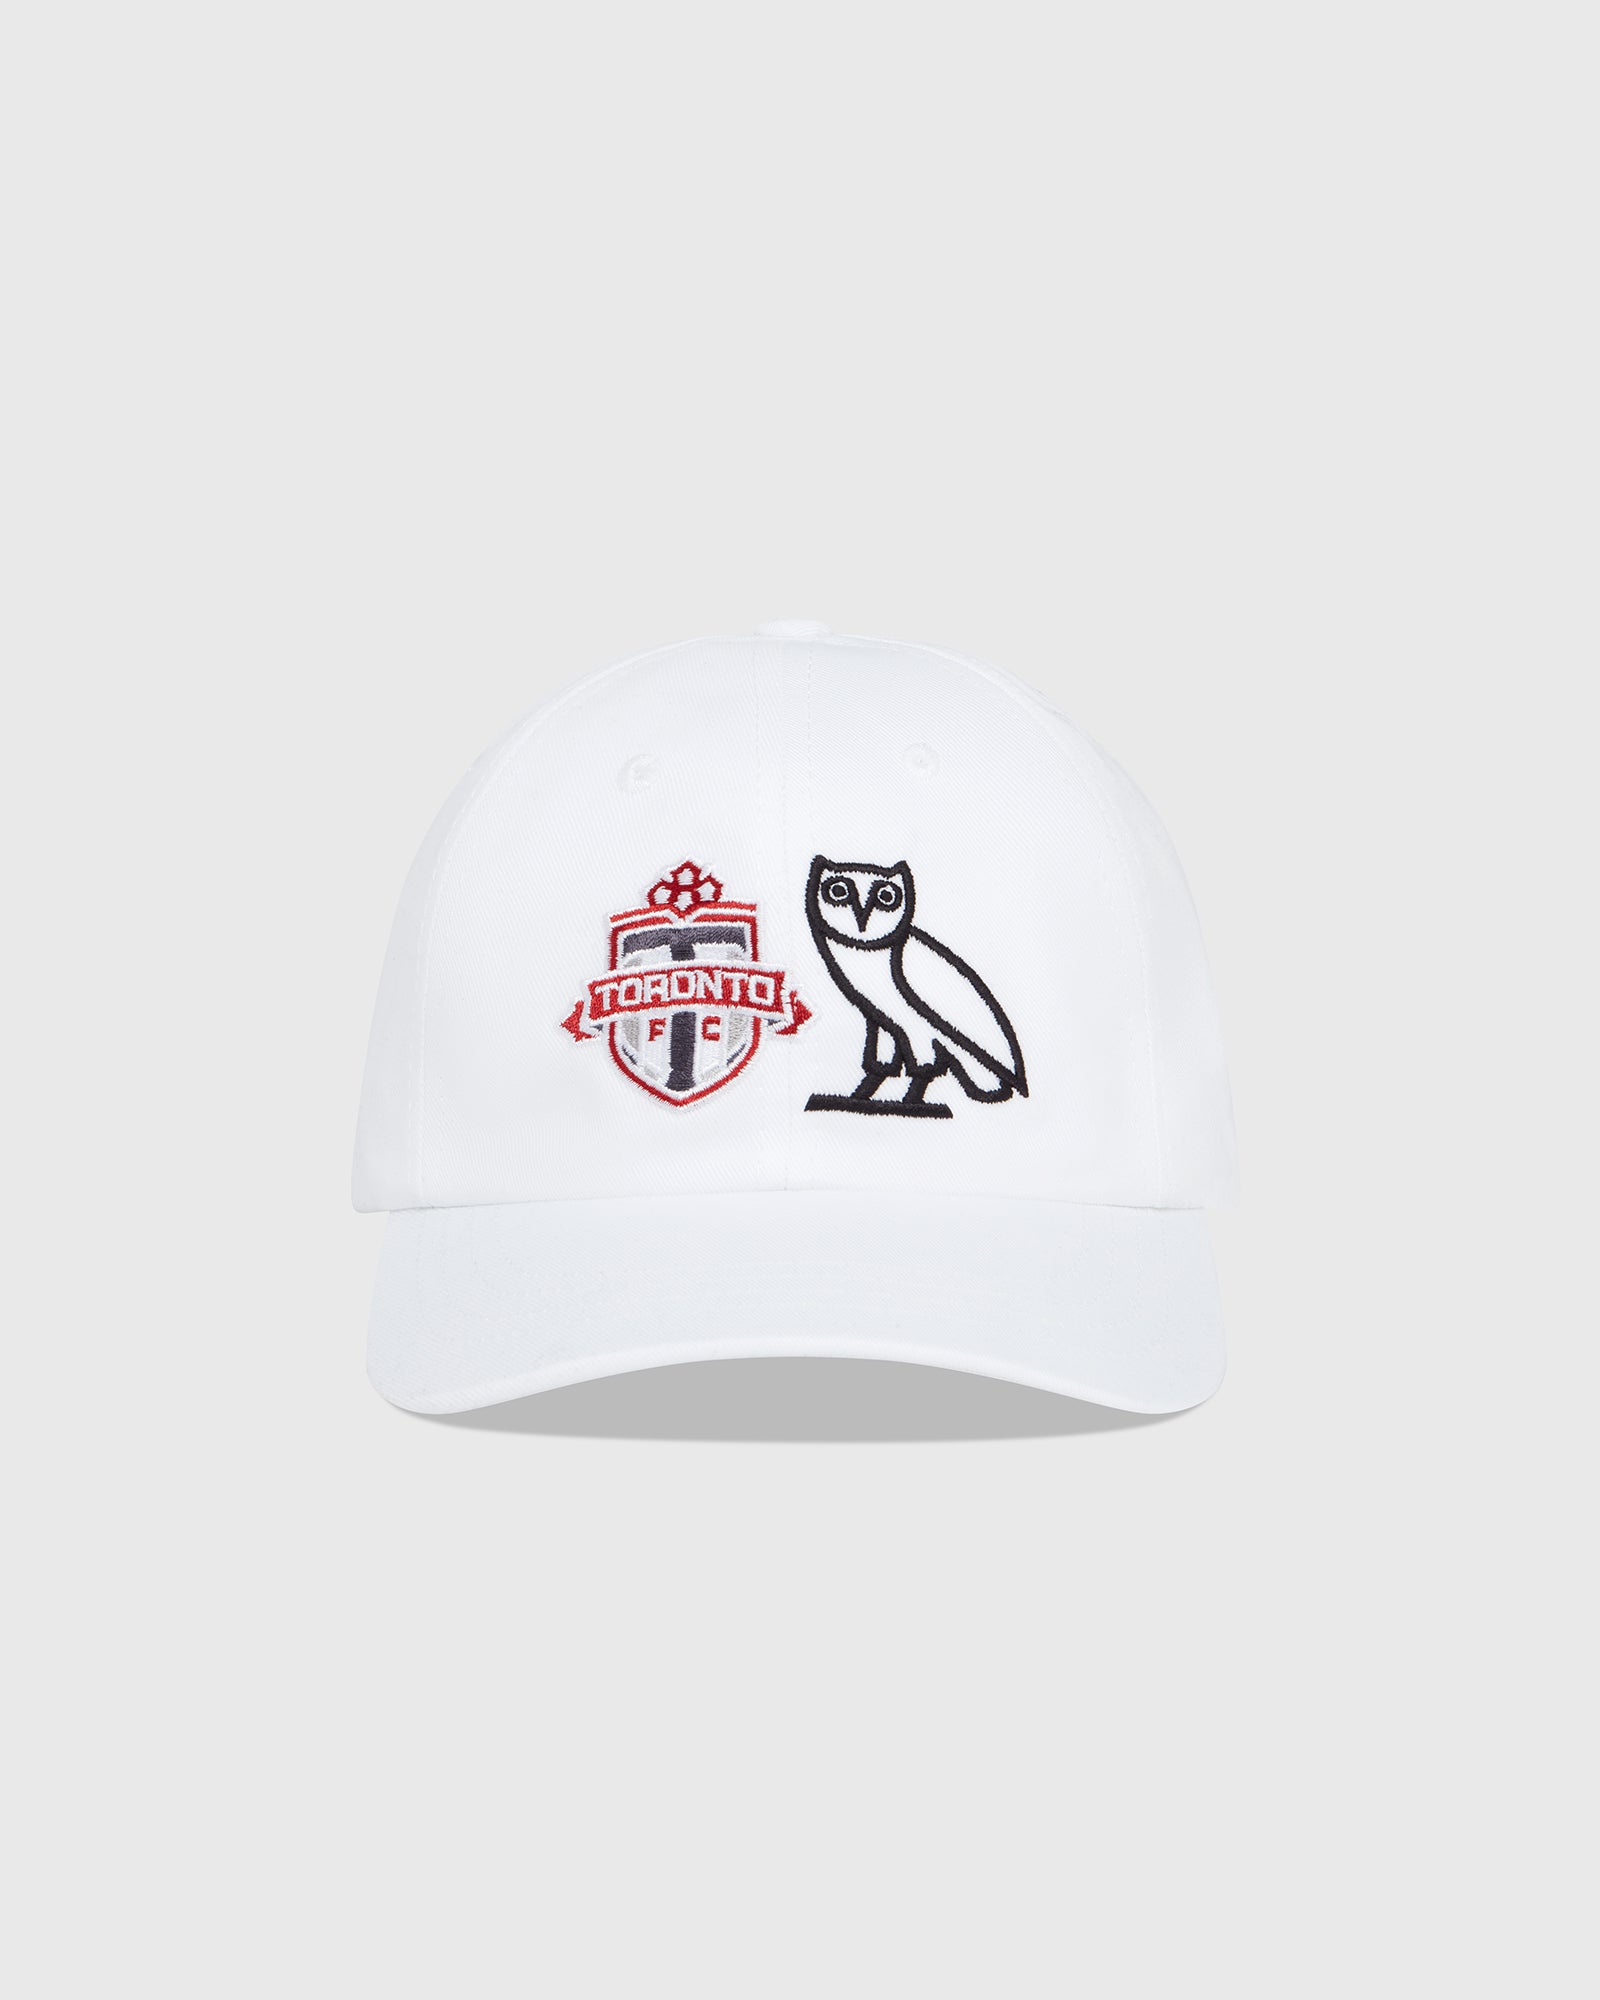 ovo raptors hat for sale